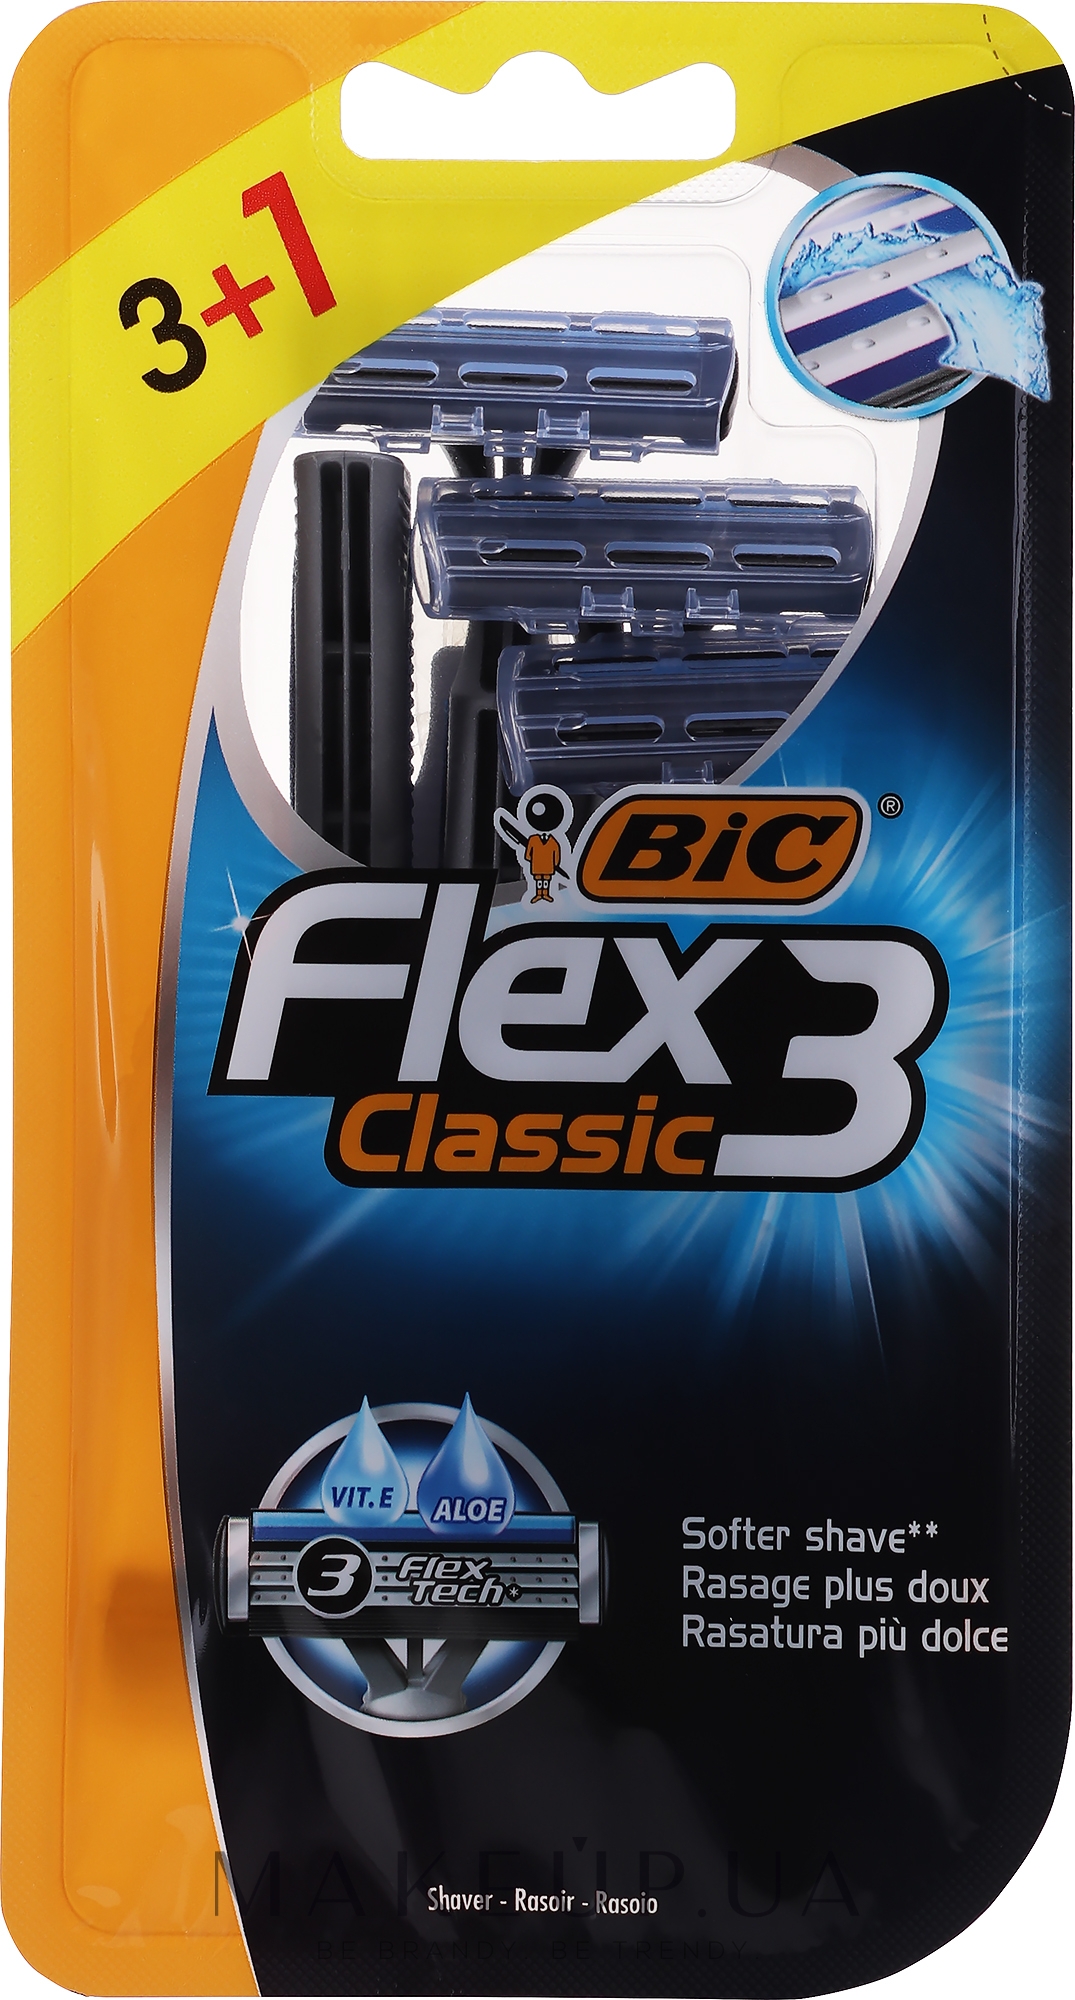 Мужской станок для бритья, 4 шт - Bic Flex 3 Classic — фото 4шт